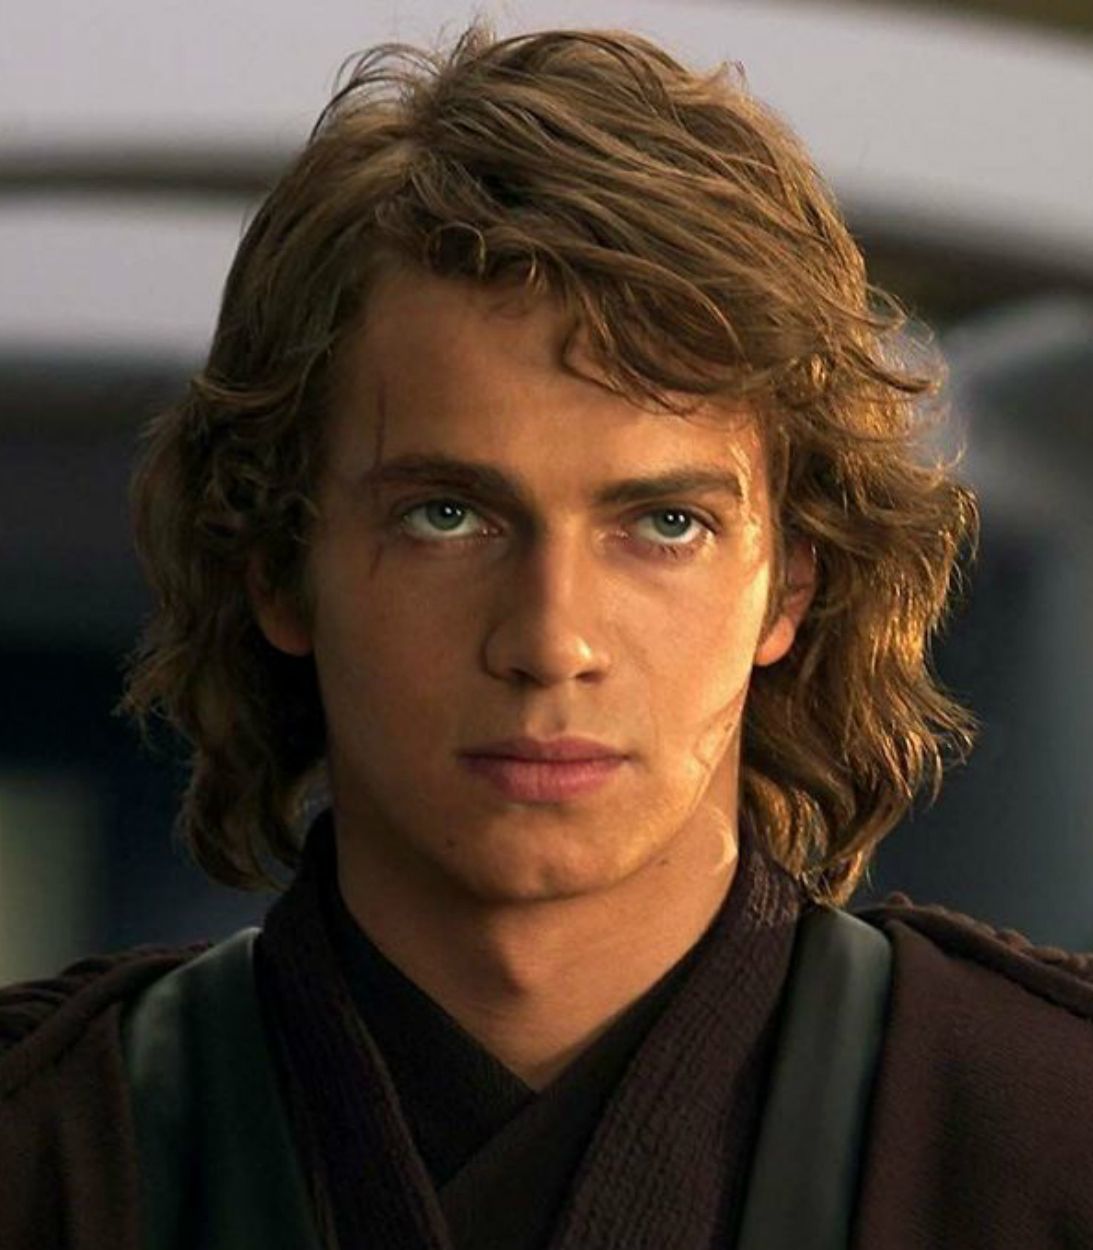 Star Wars Anakin Skywalker Hayden Christensen Vertical TLDR